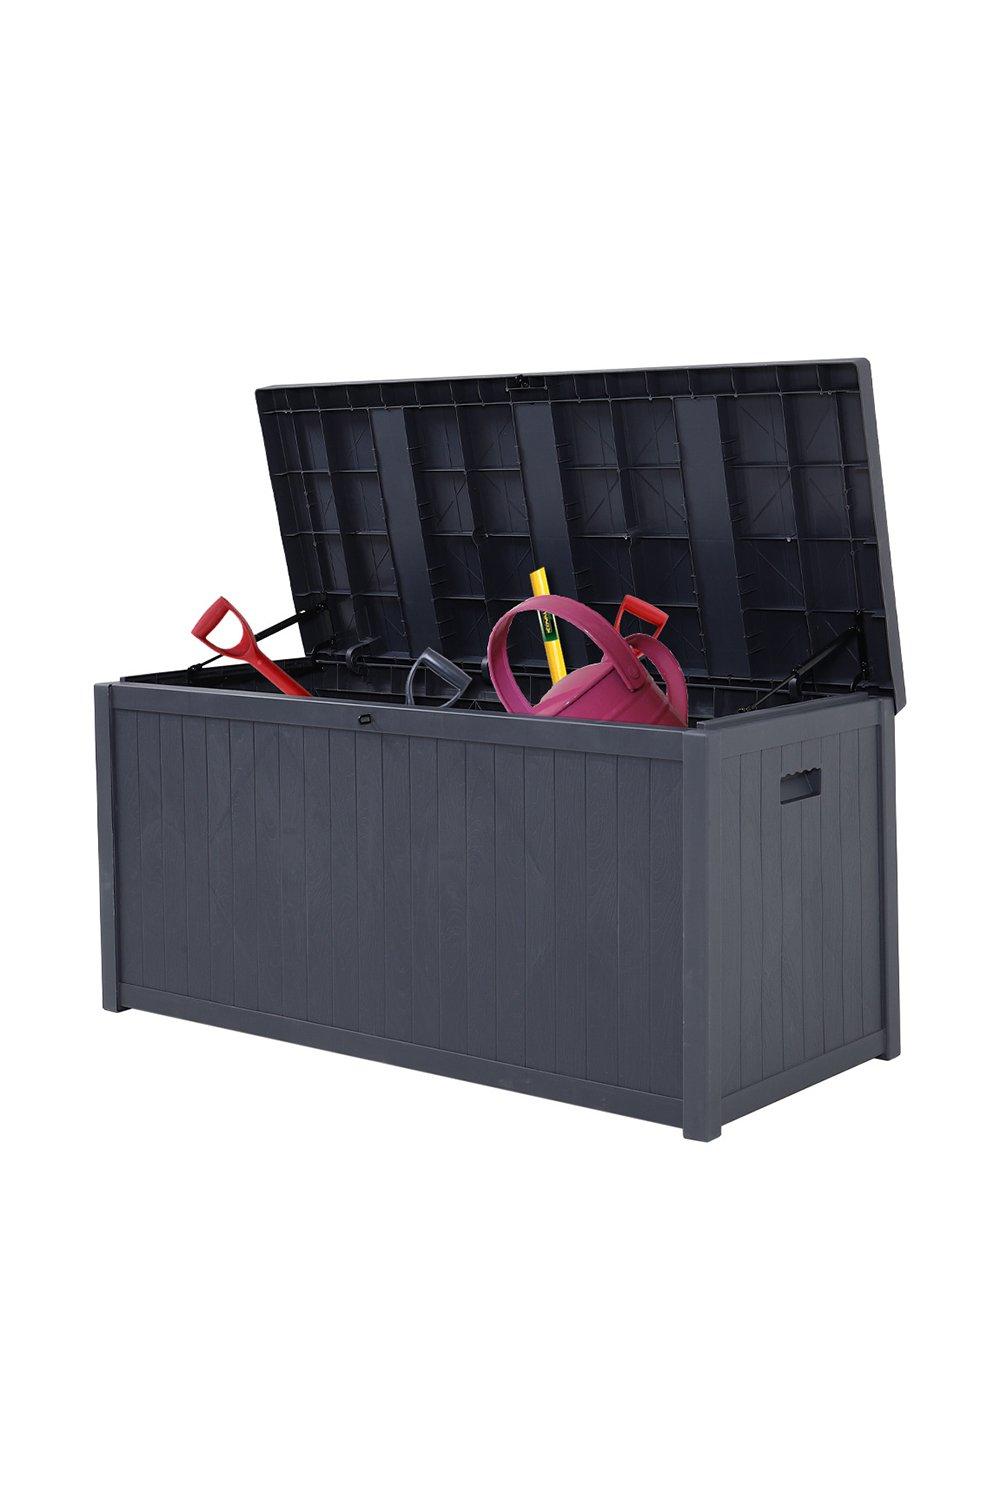 Outdoor Garden Waterproof Storage Box